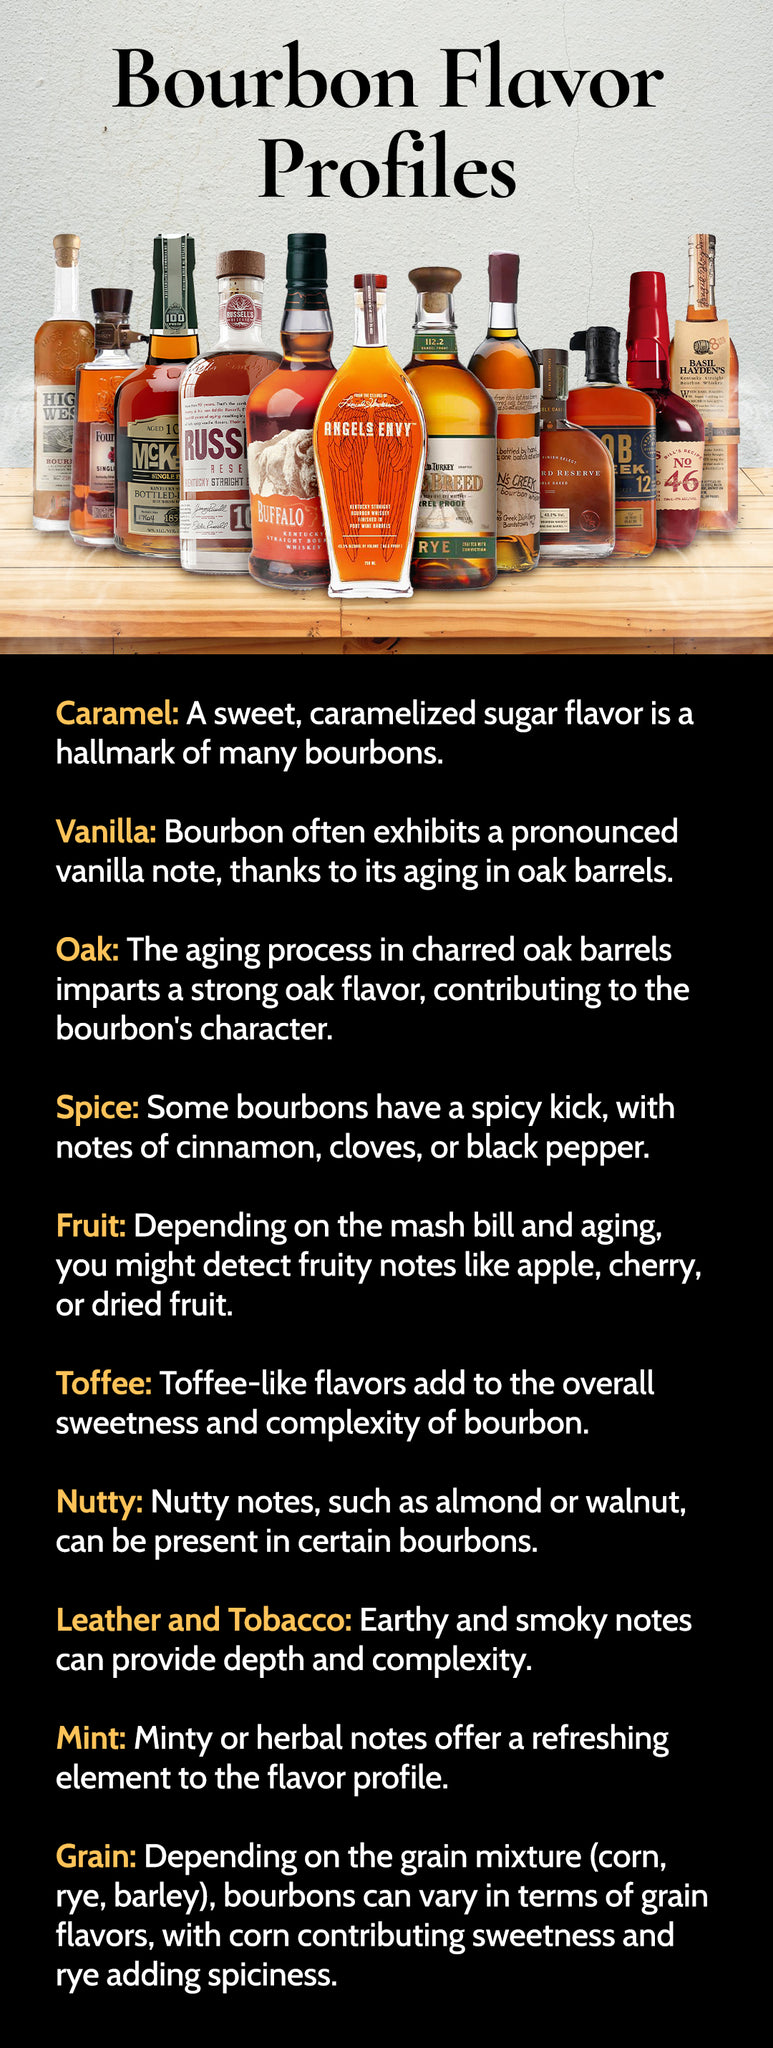 Bourbons under $100 - Flavor Profile